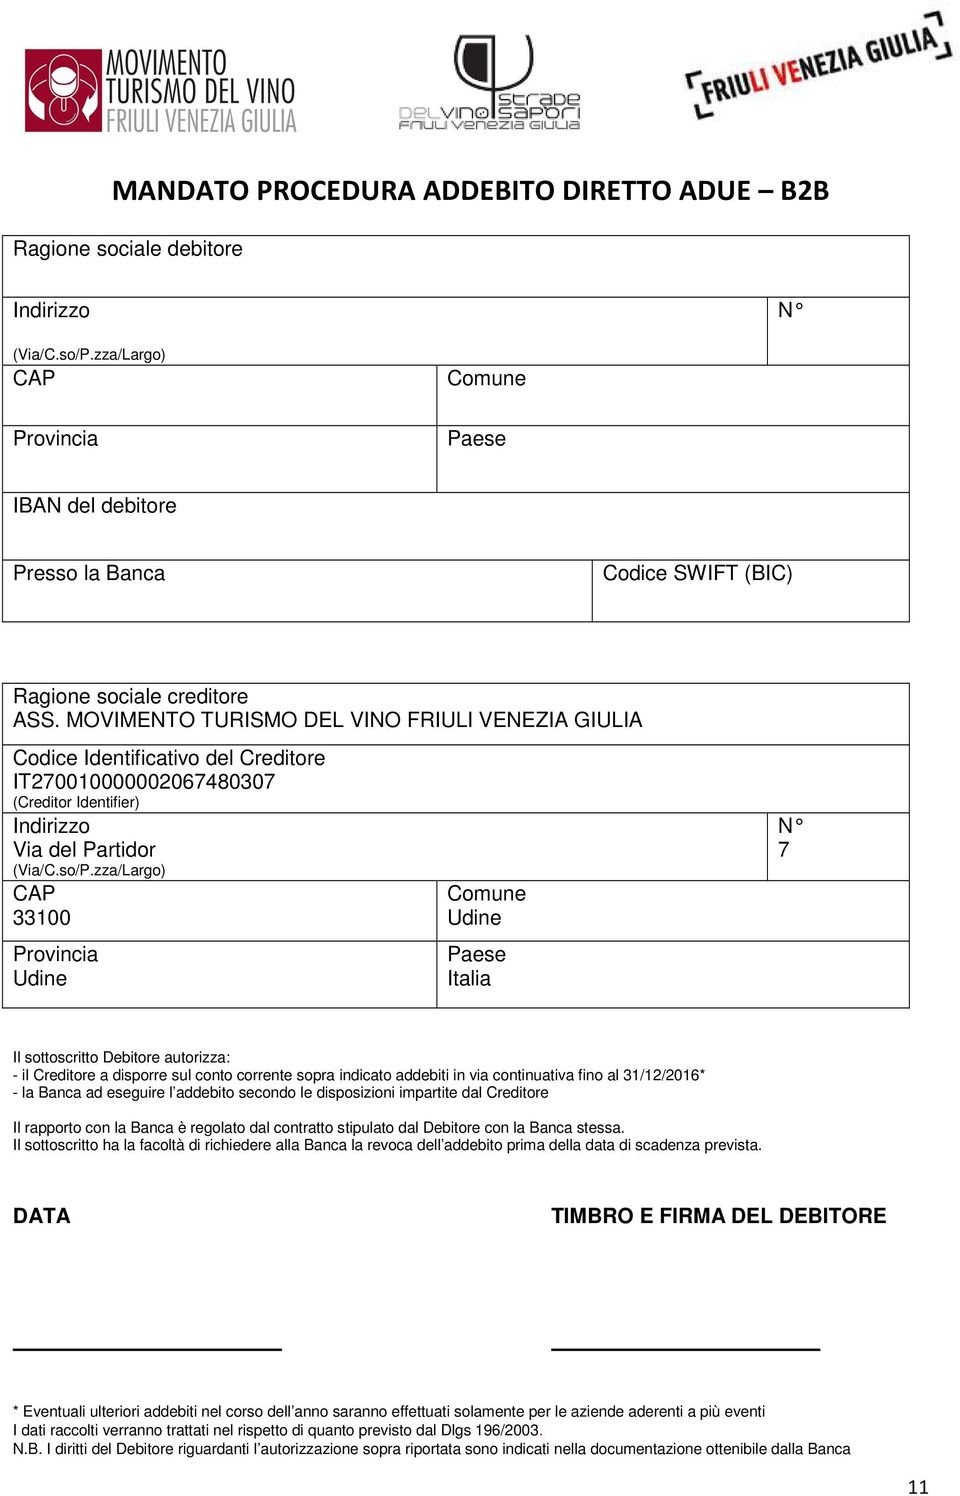 MOVIMENTO TURISMO DEL VINO FRIULI VENEZIA GIULIA Codice Identificativo del Creditore IT270010000002067480307 (Creditor Identifier) Indirizzo Via del Partidor (Via/C.so/P.